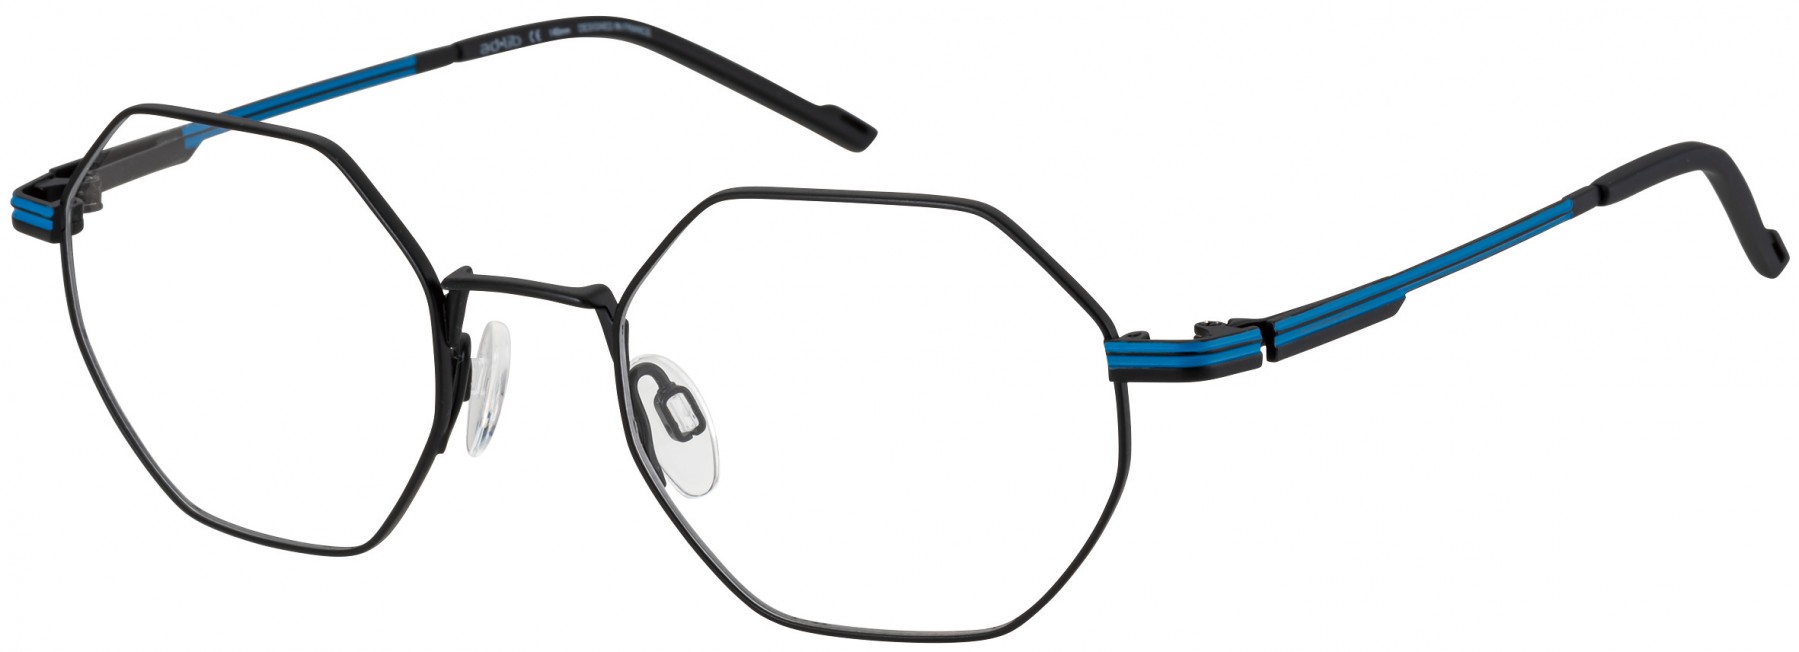 Charmant 3315 BK AD LIB - Oculos de Grau